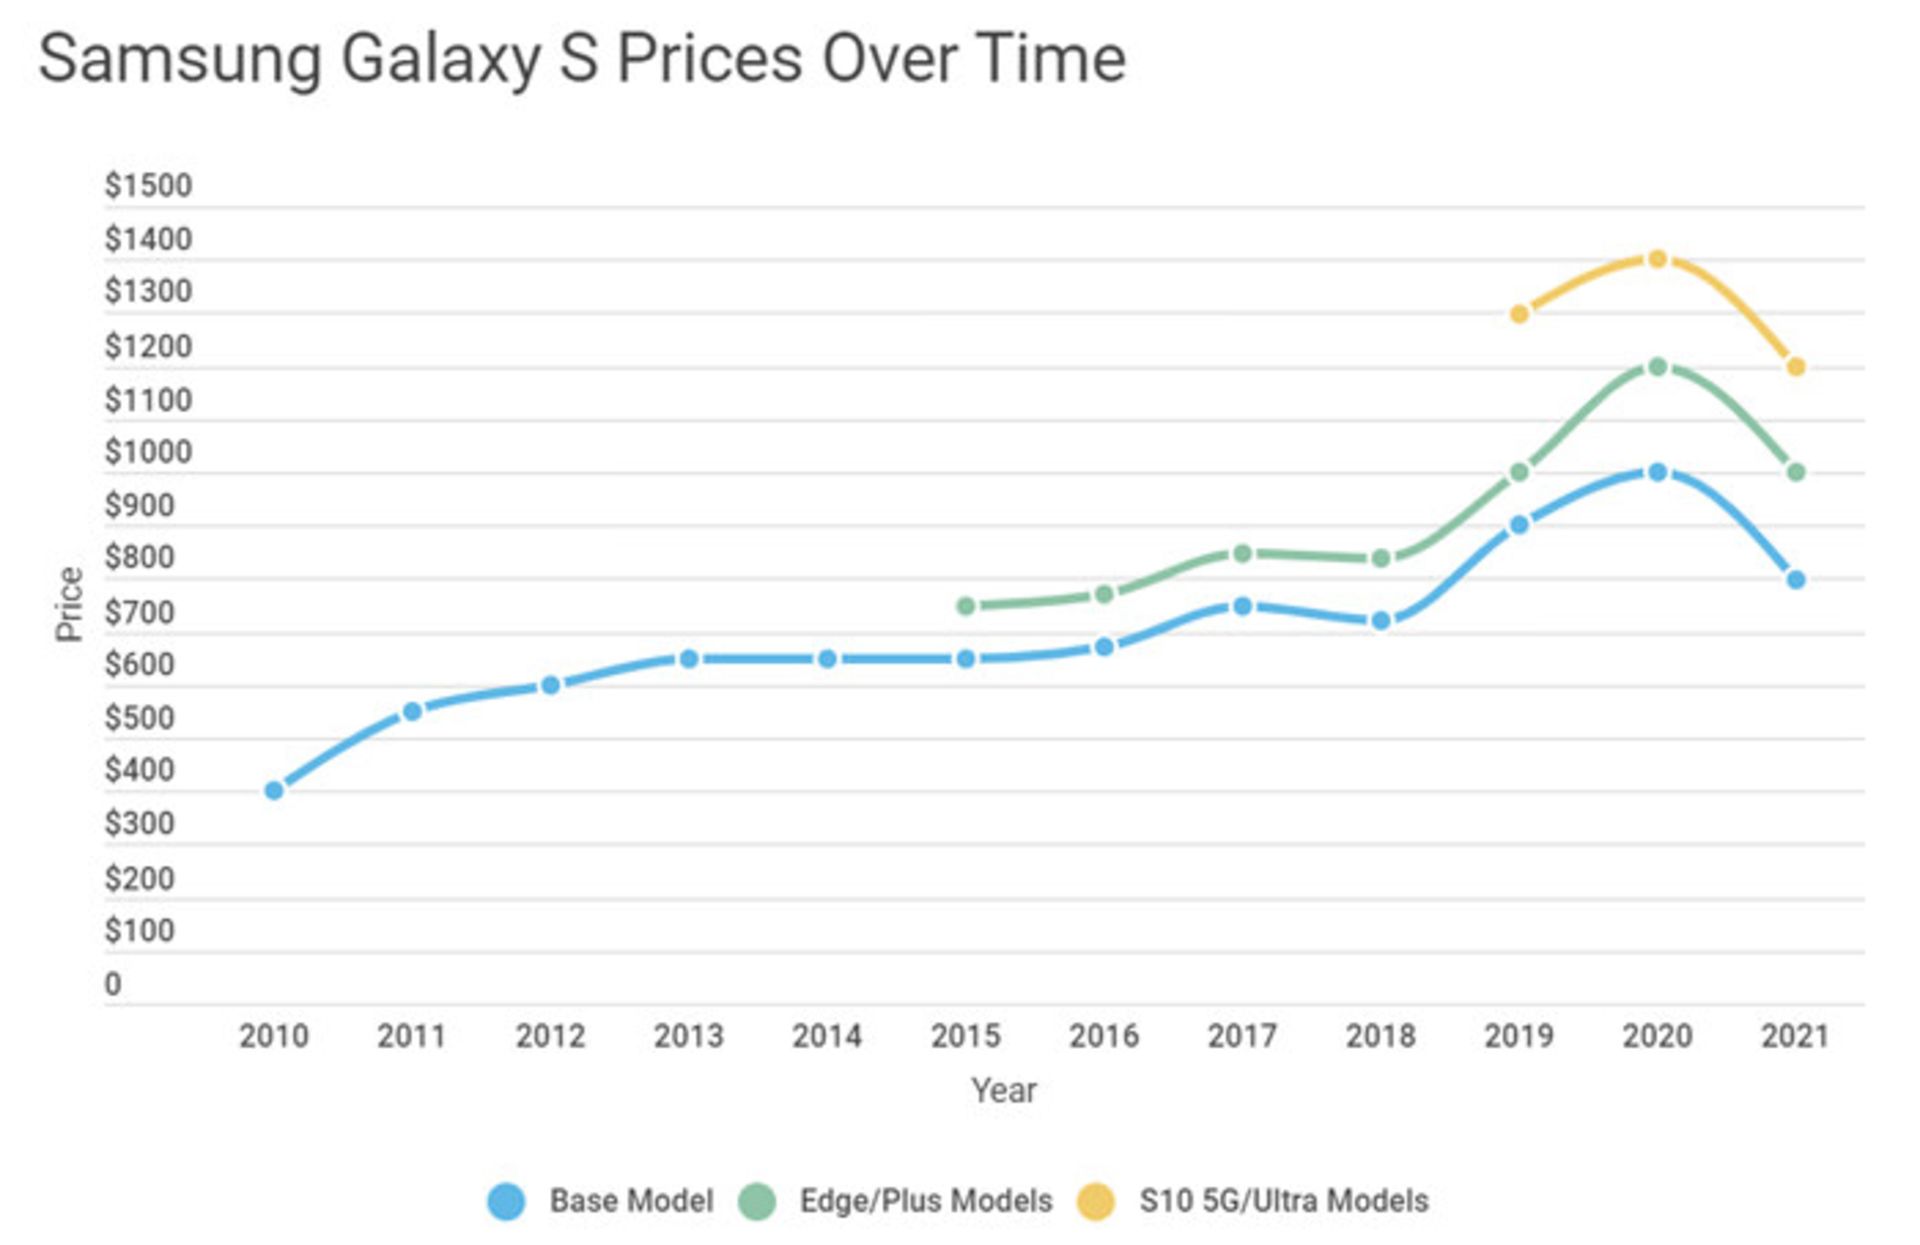 مرجع متخصصين ايران آمار مربوط به تغيير ارزش سري گلكسي اس / Galaxy S سامسونگ / Samsung در گذر زمان